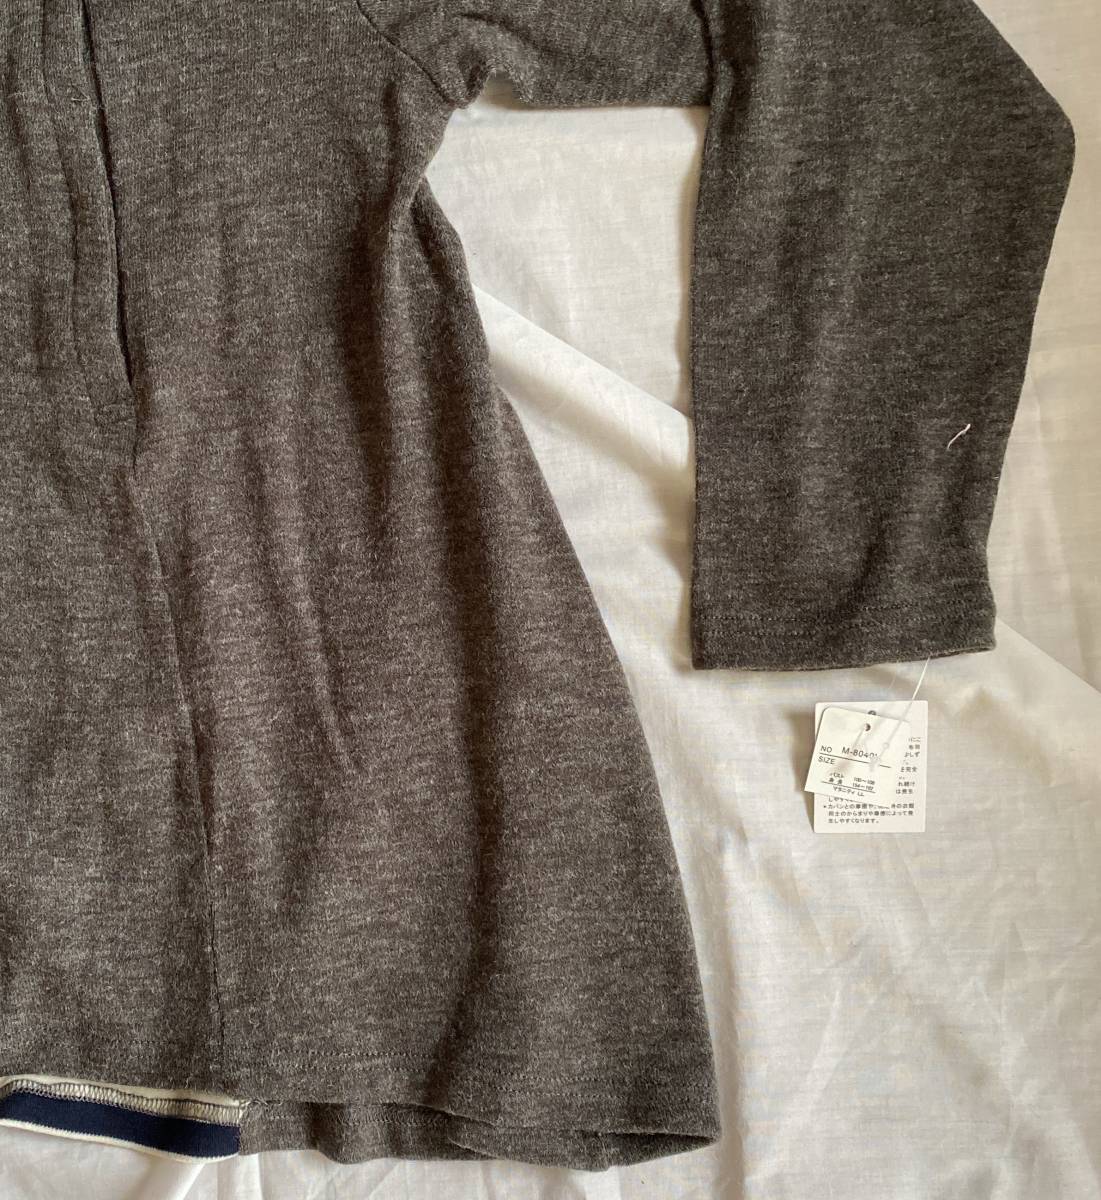  материнство - свитер LL размер Ylamorous серый цвет серия производство передний послеродовой кормление . имеется почтовый заказ товар 5290 иен включая налог товар # не использовался товар 